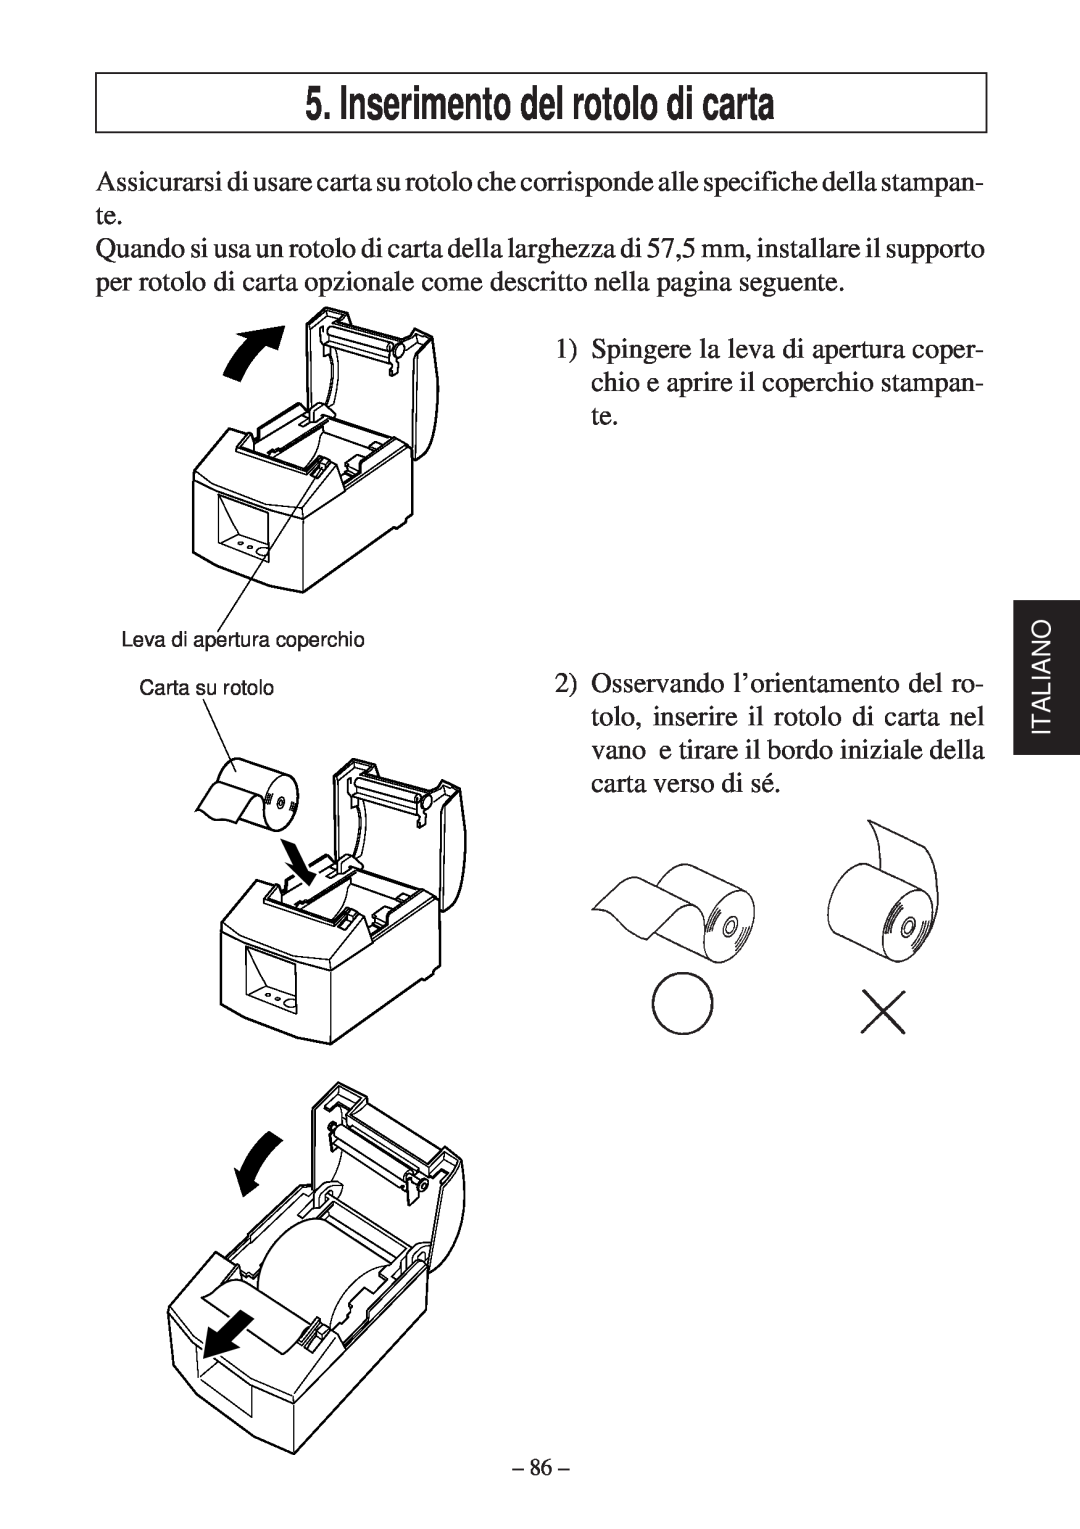 Star Micronics TSP600 user manual Inserimento del rotolo di carta, Leva di apertura coperchio Carta su rotolo 